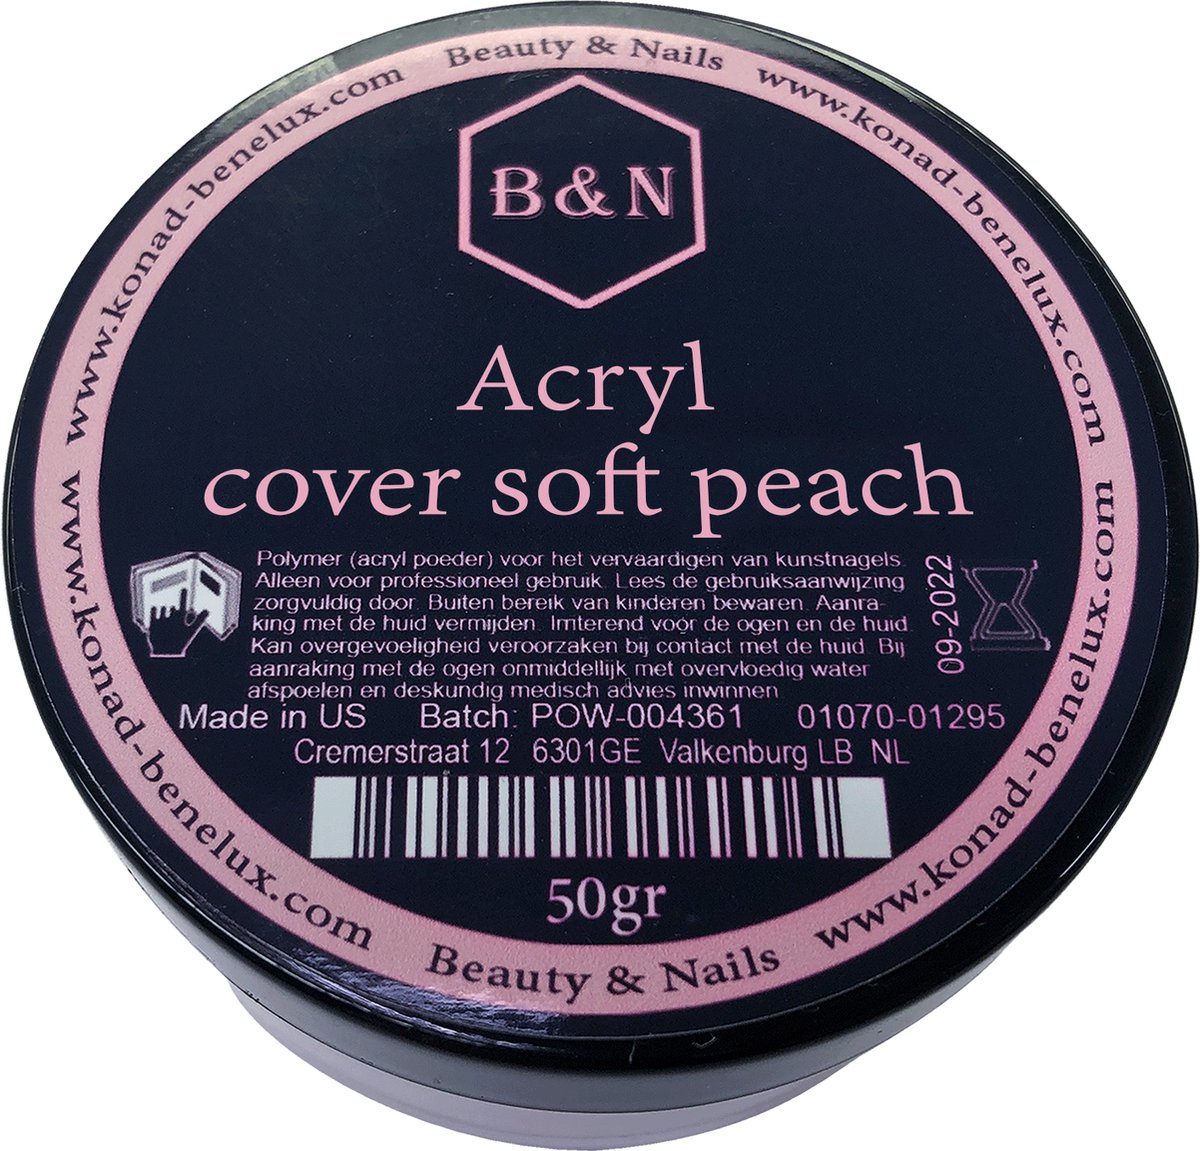 Acryl cover soft peach - 50 gr | B&N - VEGAN - acrylpoeder